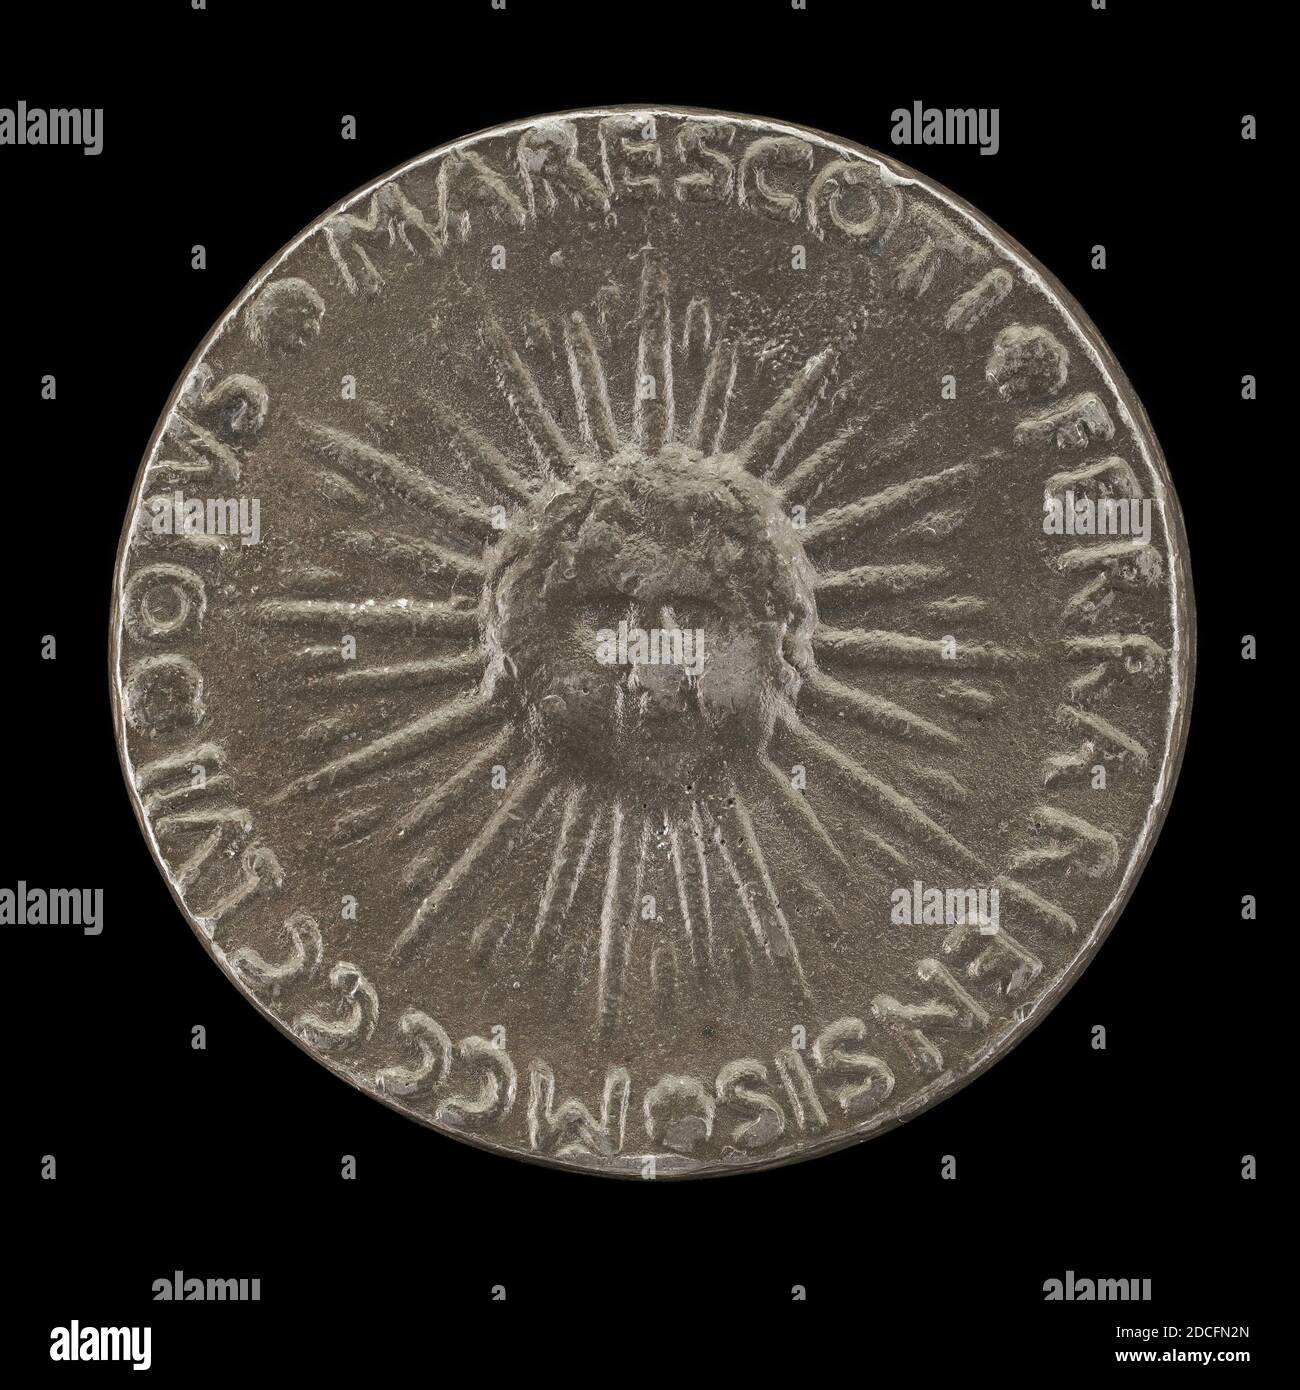 Antonio Marescotti, (artiste), Ferrarese, actif 1444/1462, Sunburst avec tête de Cherub, plomb, diamètre total: 4.92 cm (1 15/16 in.), poids brut: 77.64 gr (0.171 lb.), axe: 12:00 Banque D'Images